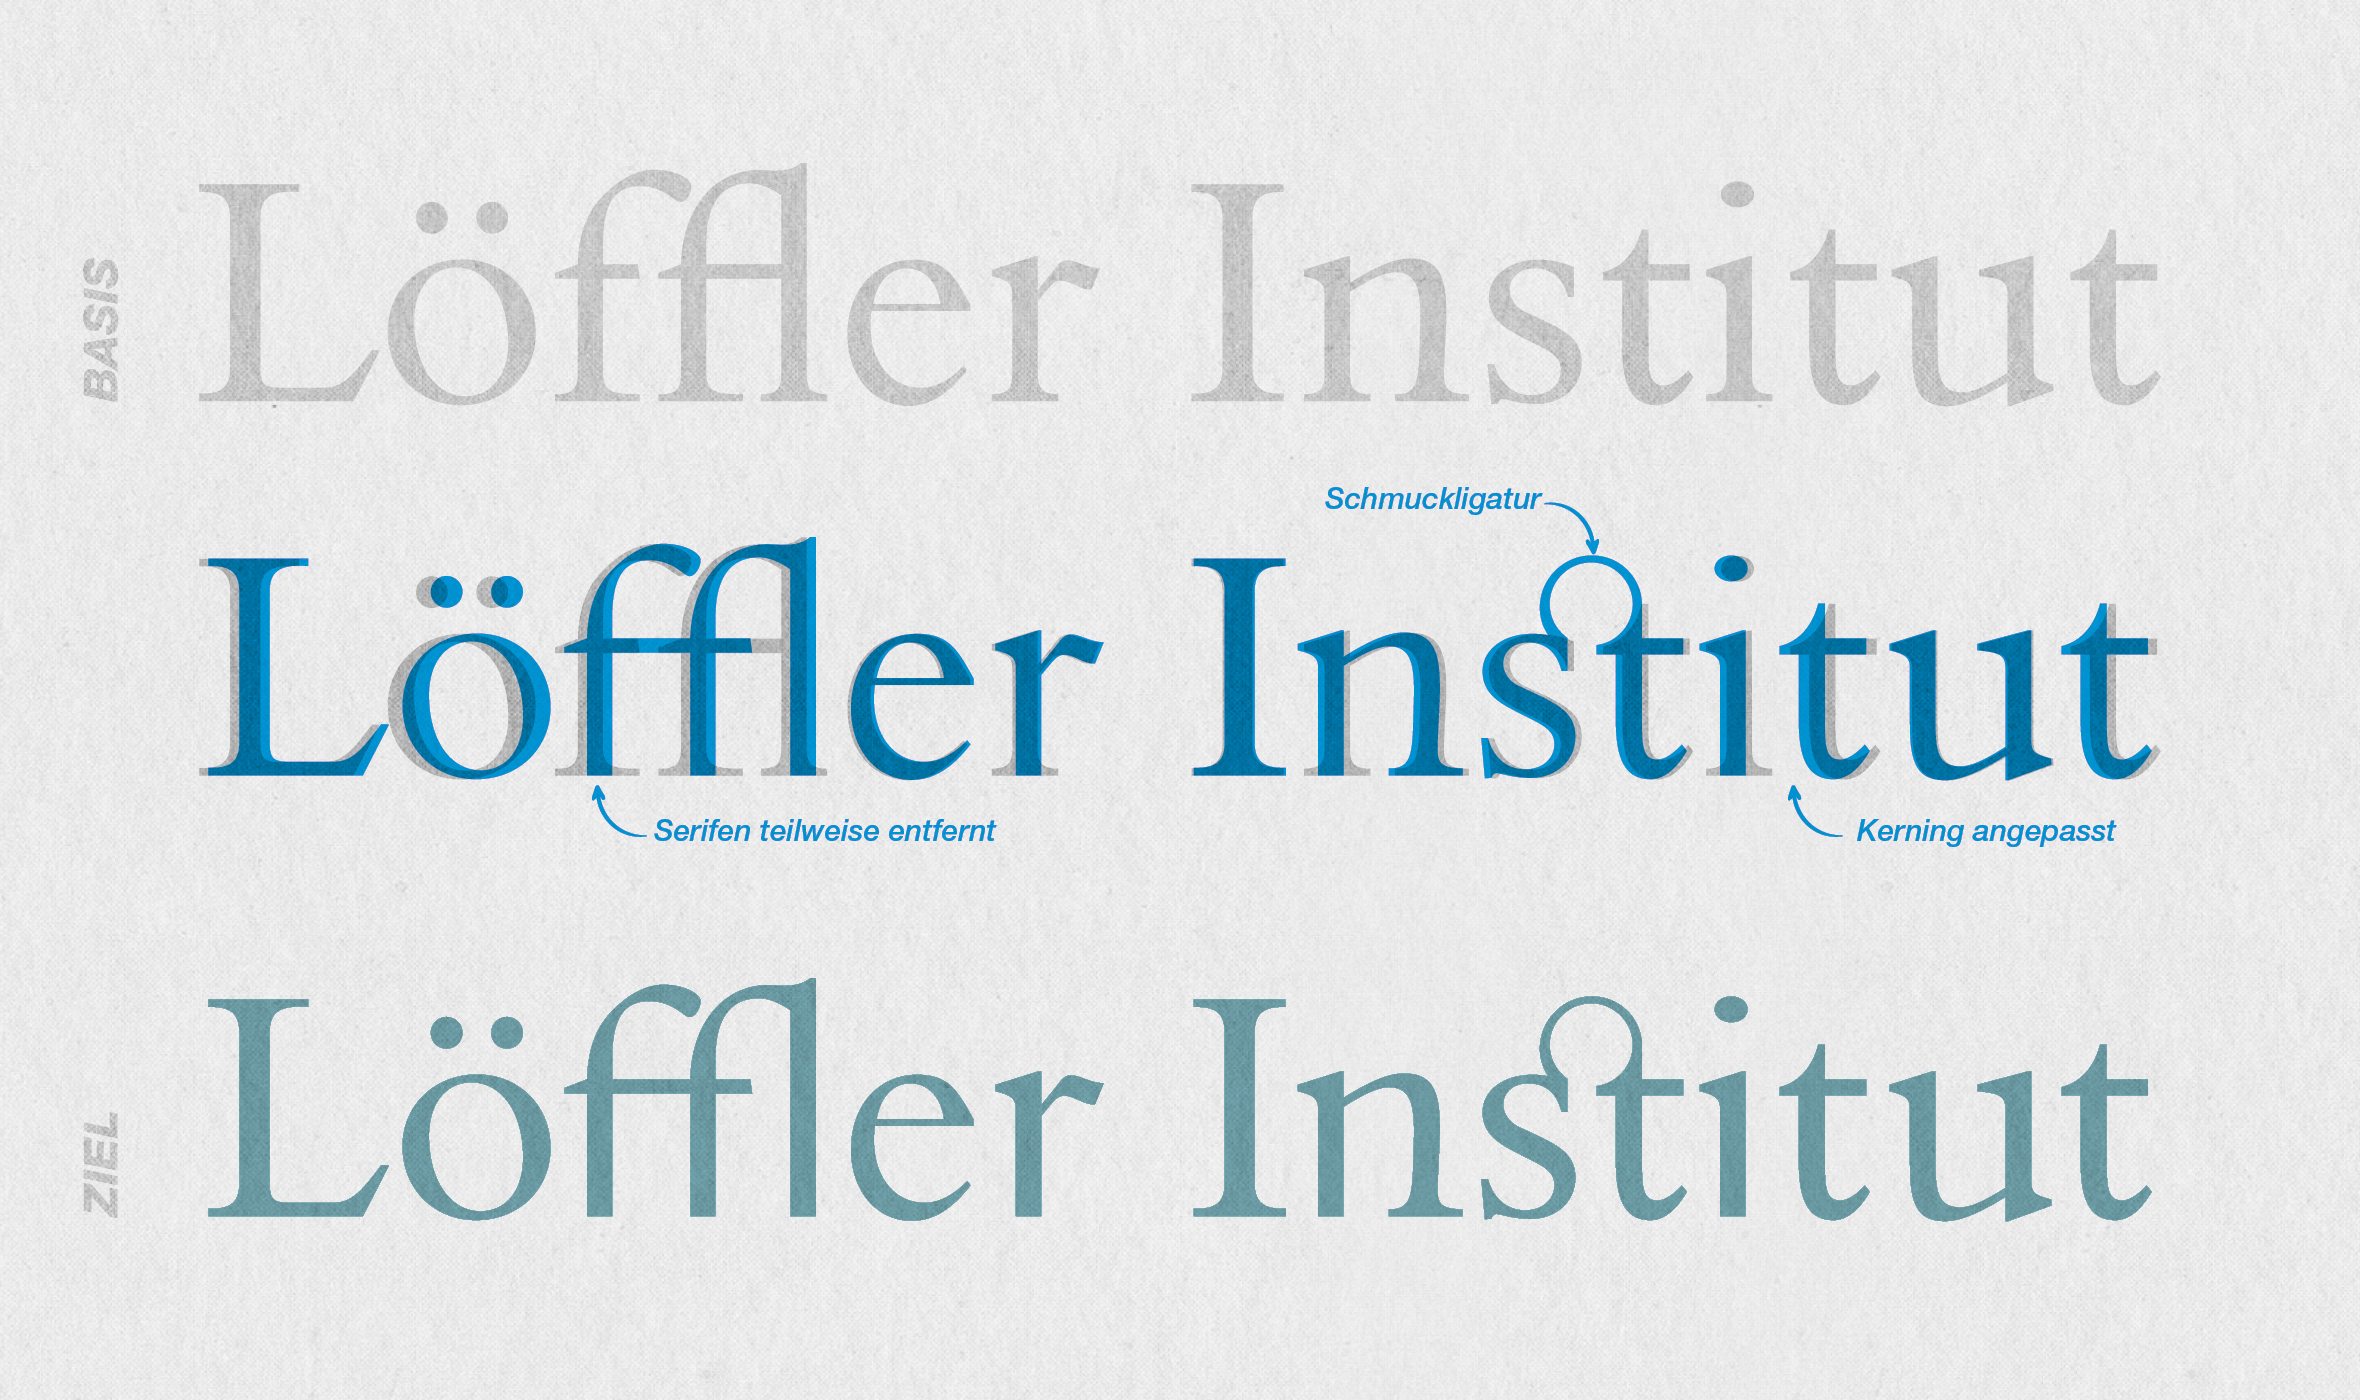 Löffler Institut, Aufbau von Lese- und Schreibkompetenz, Logoentwicklung, Corporate Design, Kommunikationskonzept, Wortmarke, Typografie, Details, Schmuckligatur